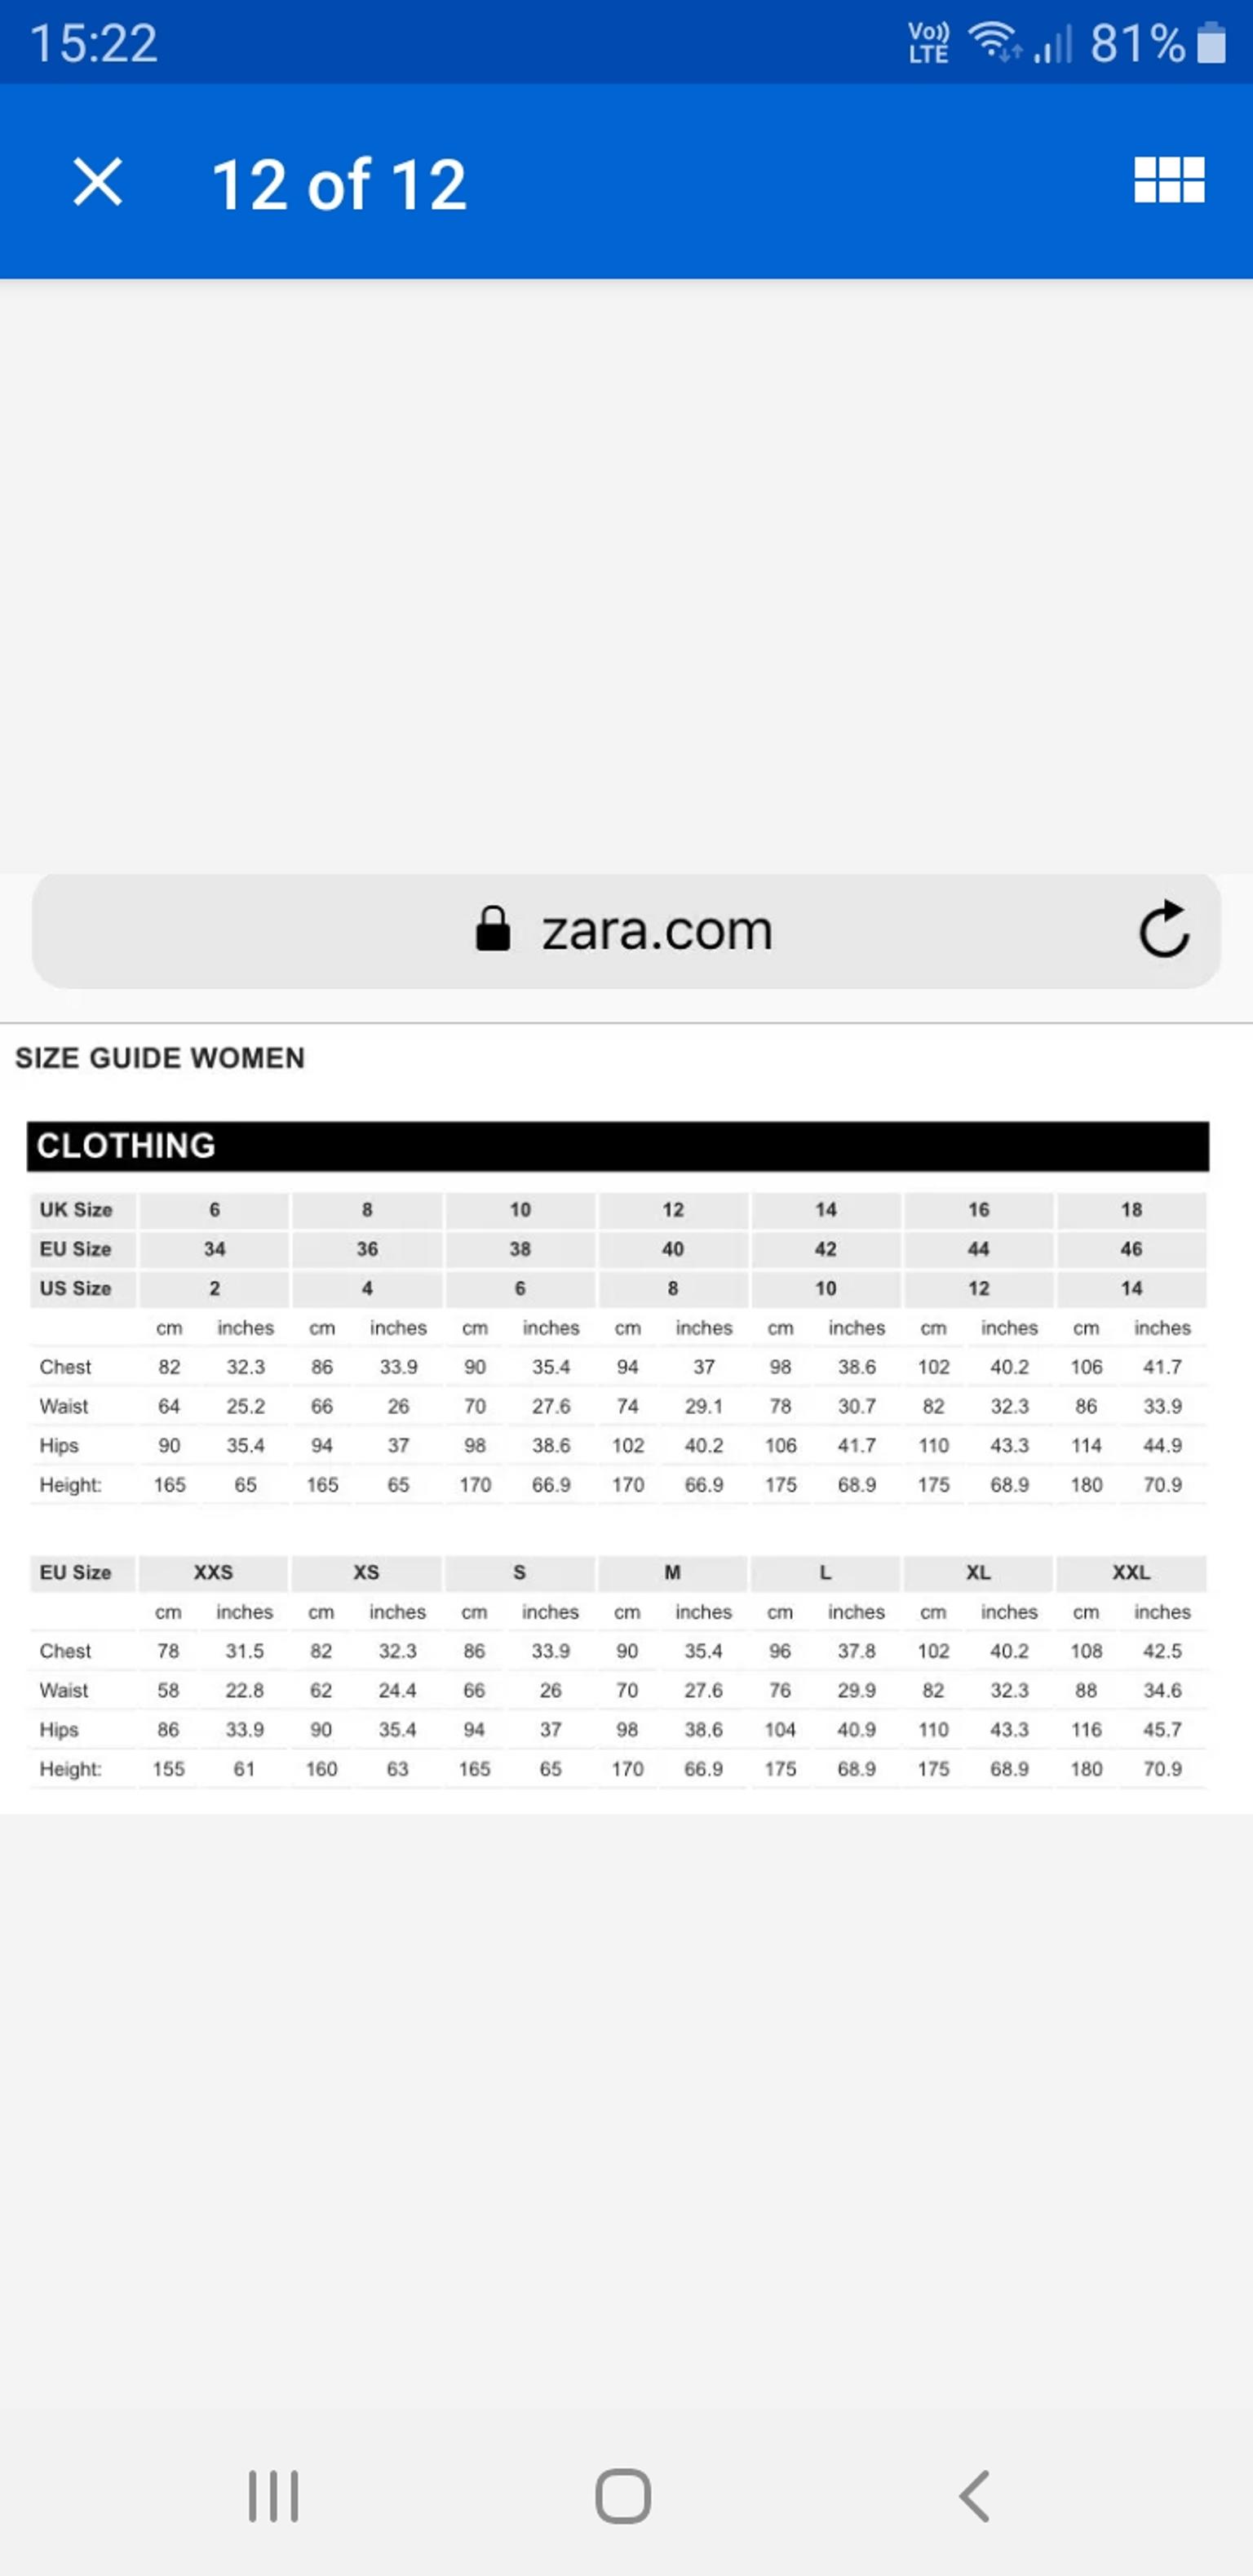 what size is zara xl